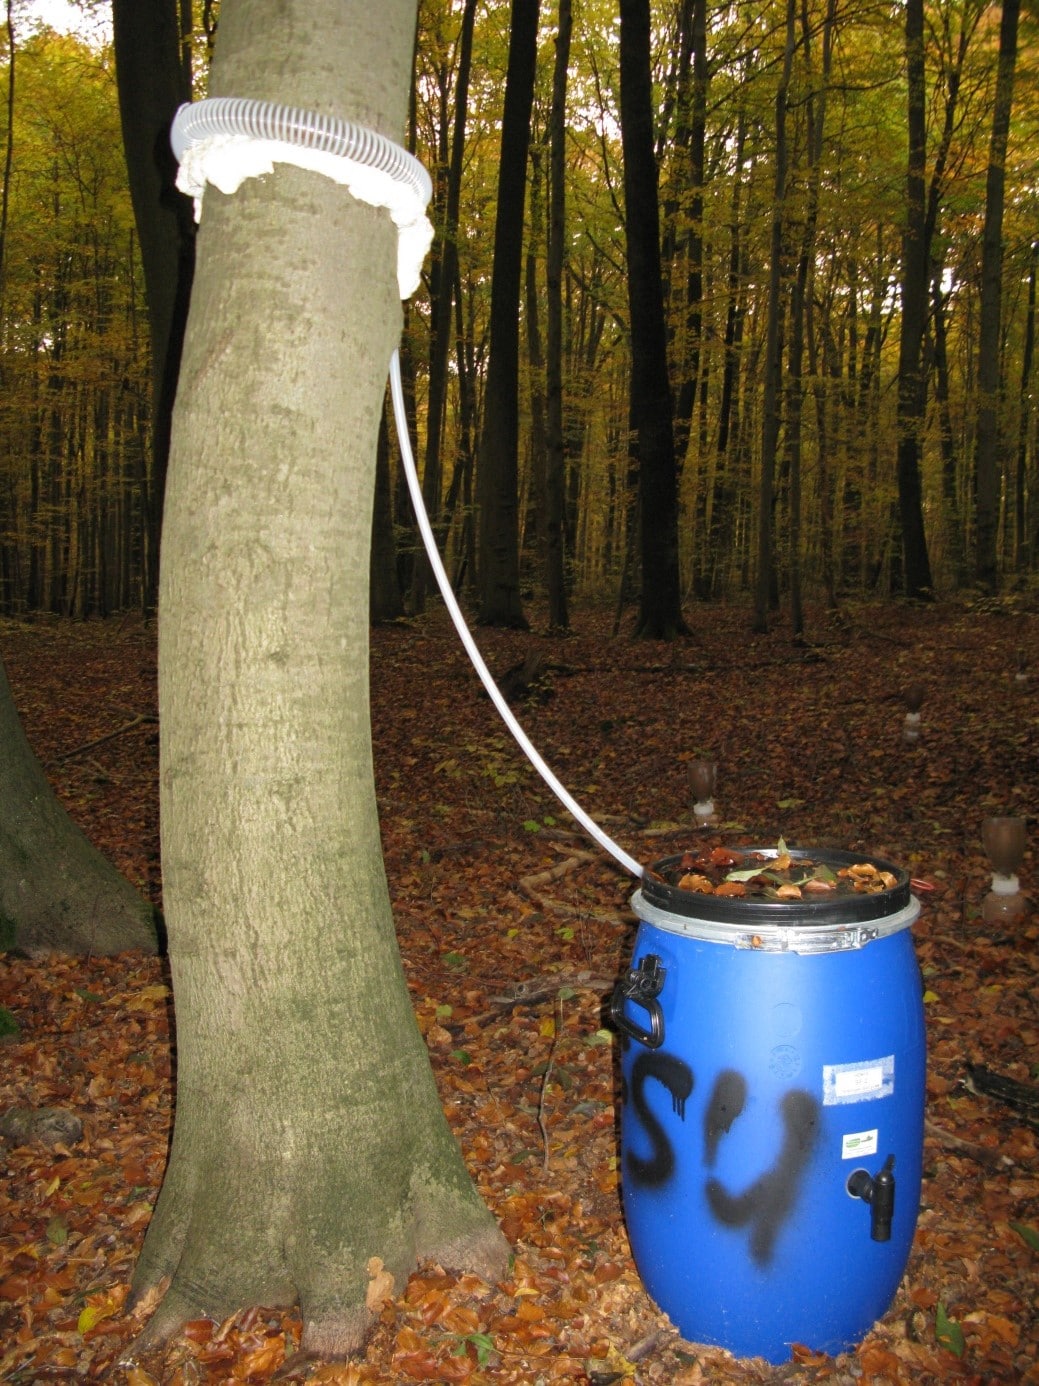 Abbildung: Das Foto zeigt in einem herbstlichen Wald rechts neben dem Stamm einer Buche eine Tonne zum Sammeln für Stamm-Abflusswasser. Mit Polyurethan-Schaum, der wie Schlagsahne aussieht, ist eine Manschette rund um den Stamm gelegt worden. Die Schaum-Manschette fixiert einen ringförmigen Schlauch aus Kunststoff. 
Von dem Schlauch führt ein zweiter dünnerer Schlauch nach unten zu der blauen Sammeltonne, die auf dem mit Laub bedeckten Waldboden steht. Der Deckel der Tonne hat eine erhöhte Umrandung, innerhalb derer sich Wasser und Laub angesammelt haben. An der Tonne befinden sich Tragegriffe und ein Auslass-Hahn.